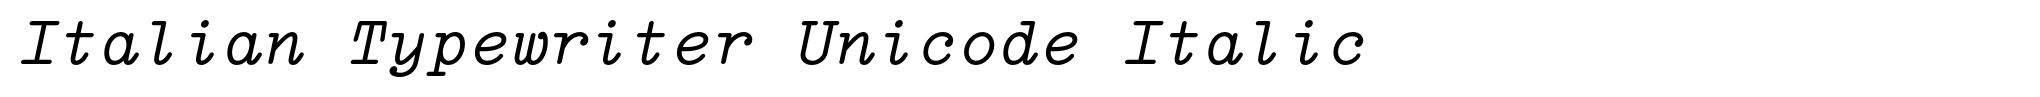 Italian Typewriter Unicode Italic image